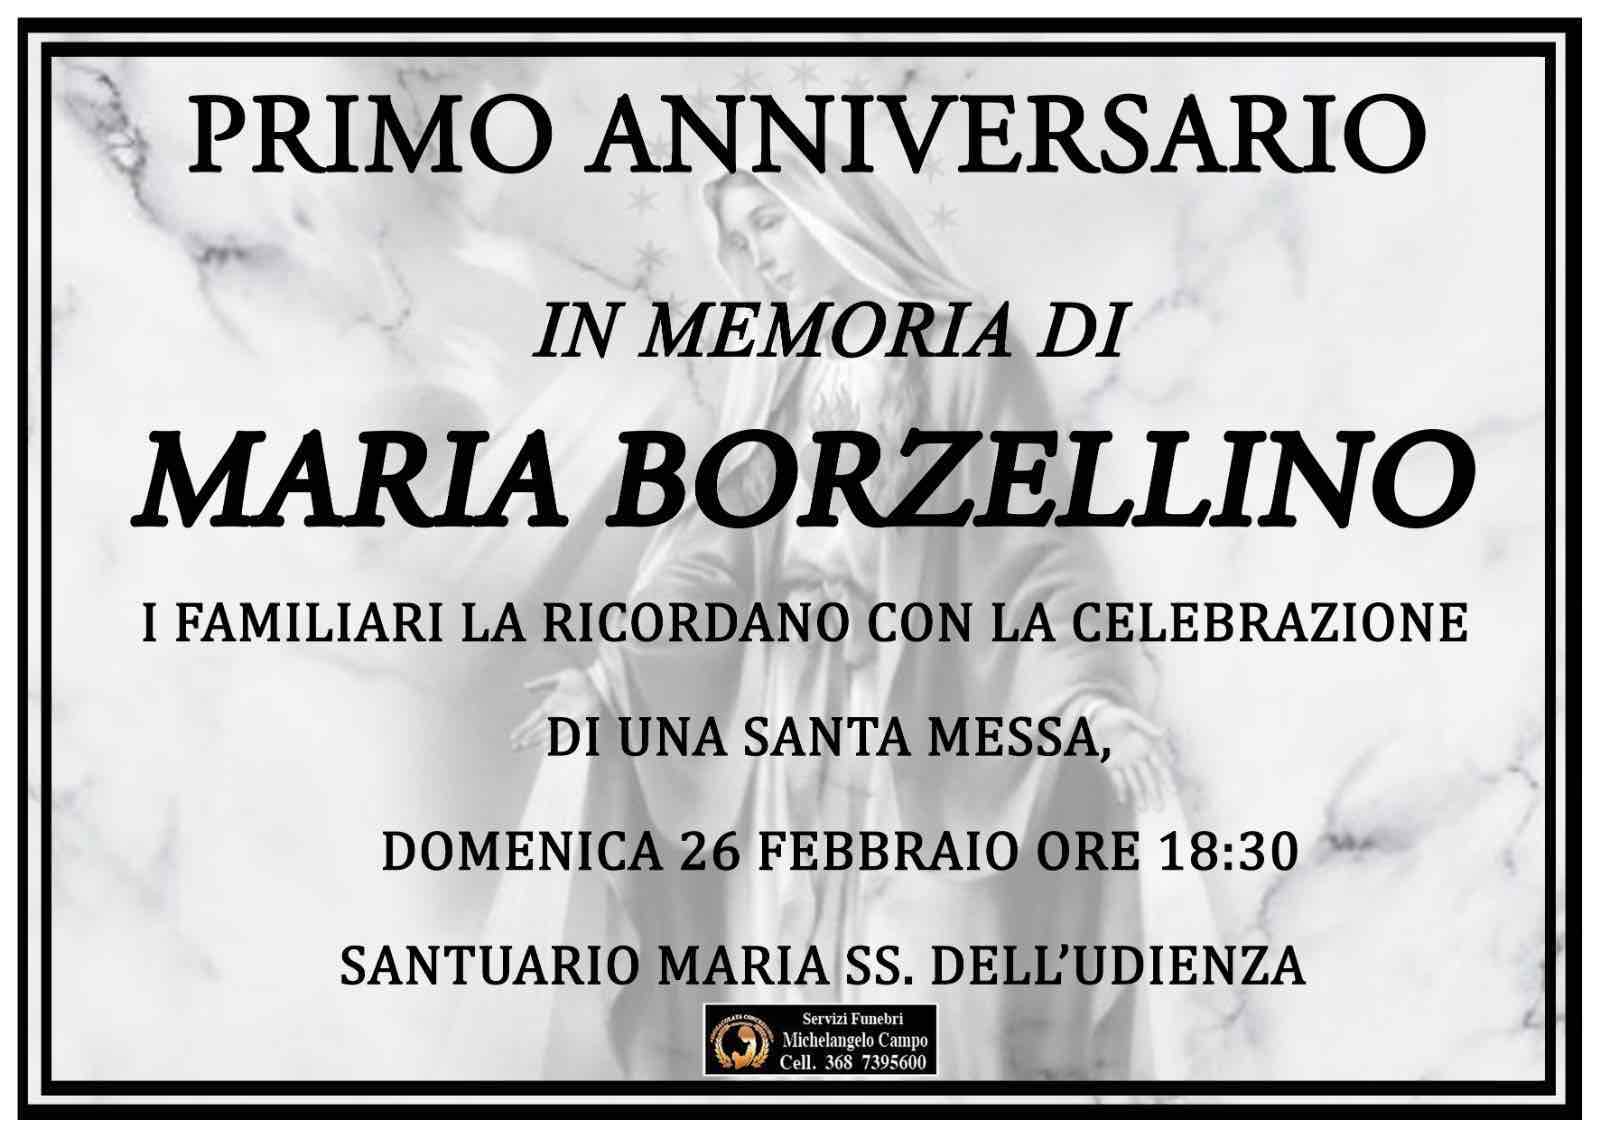 Maria Borzellino